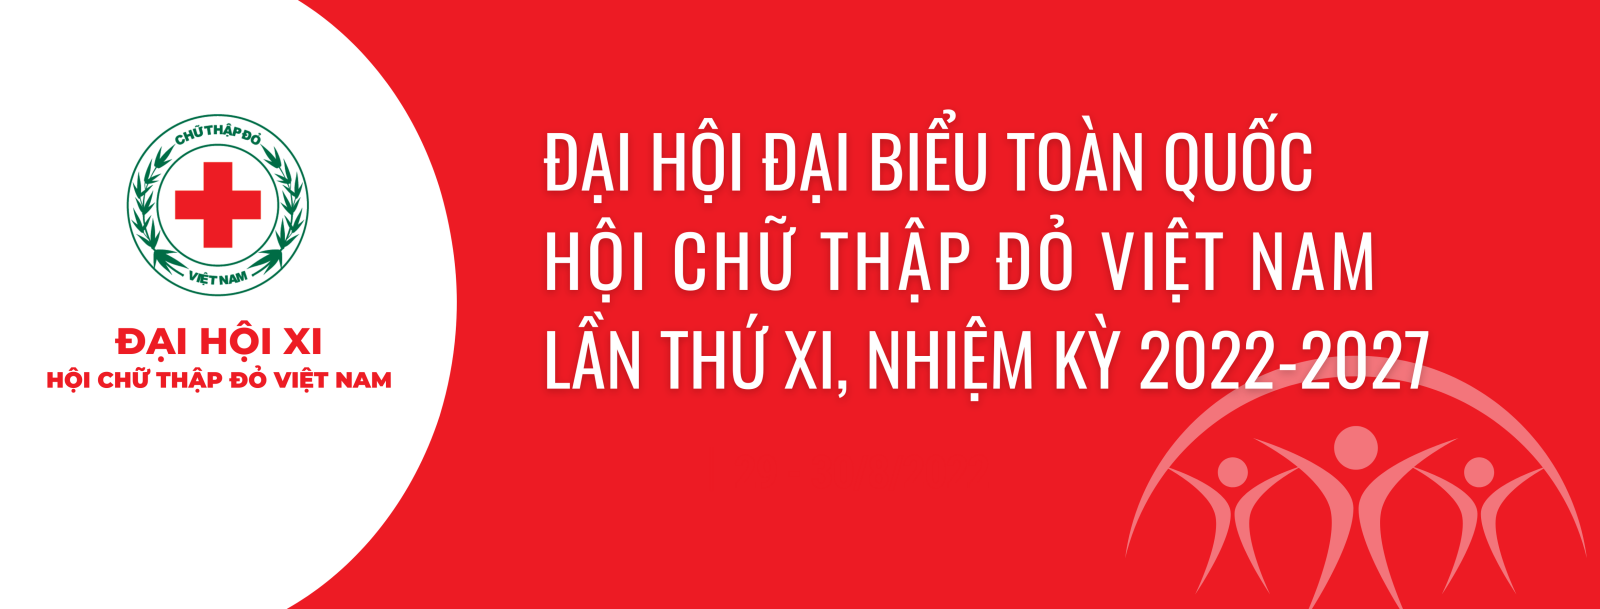 Chào mừng Đại hội đại biểu Hội Chữ thập đỏ Việt Nam lần thứ XI nhiệm kỳ 2022 - 2027